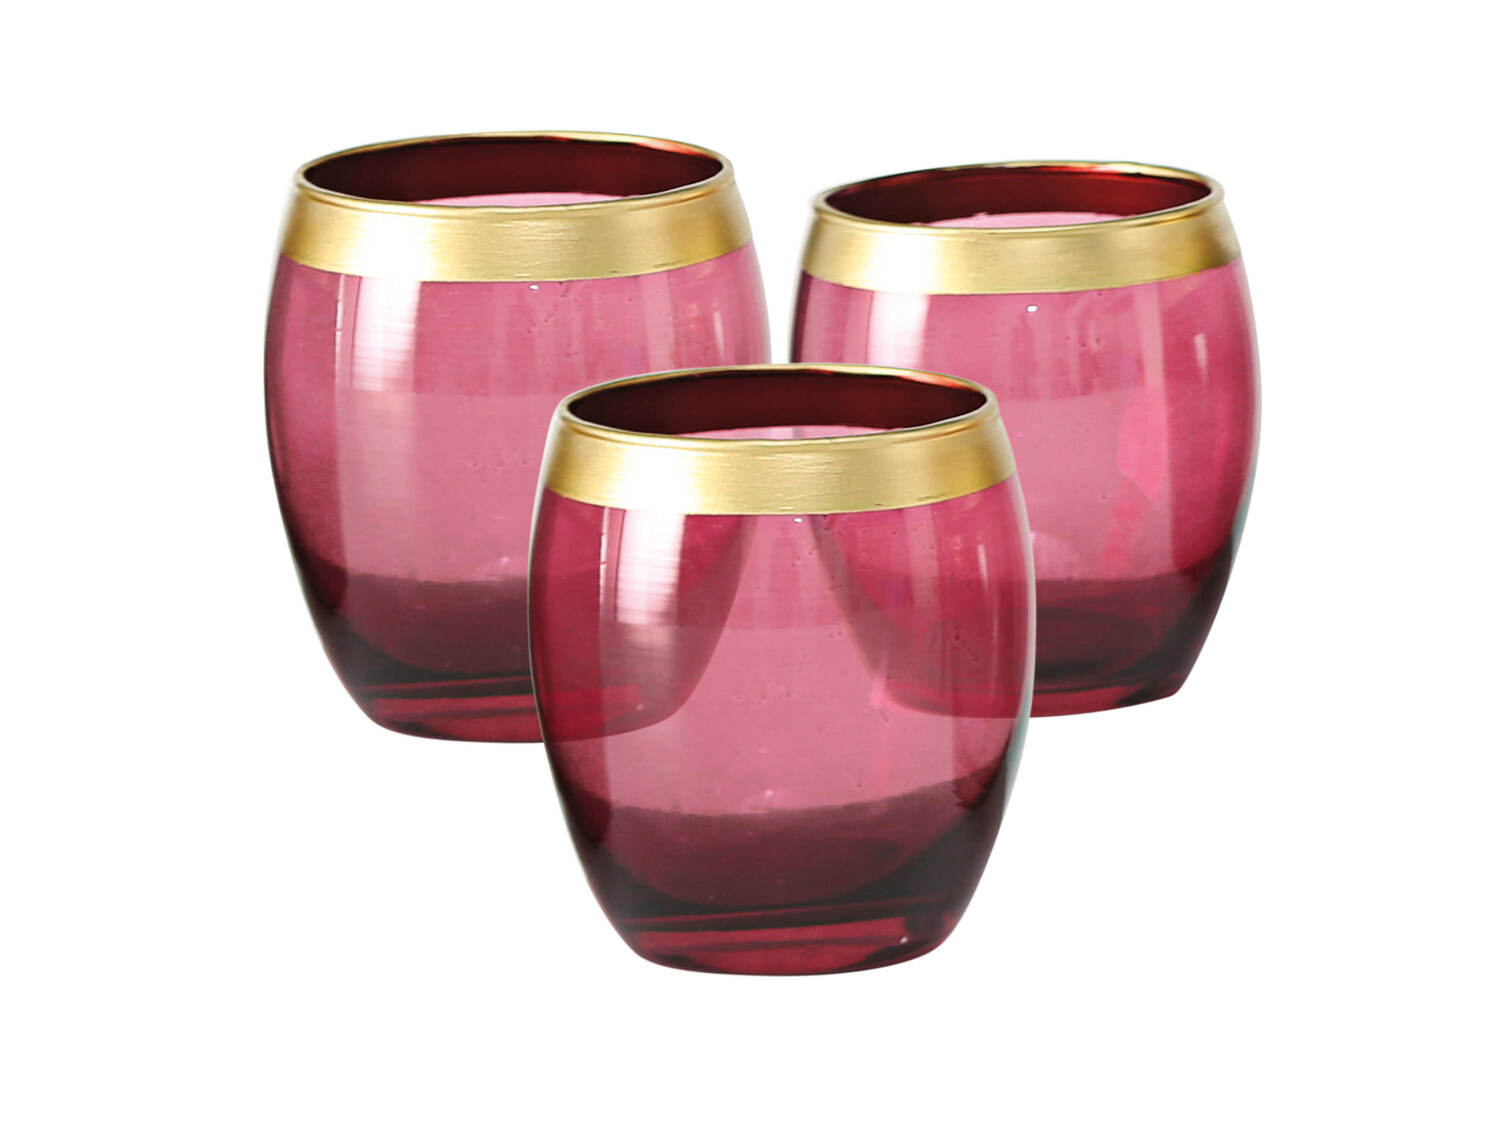 Świecznik, wazon lub zestaw 3 świeczników Melinera, cena 19,99 PLN  

Opis